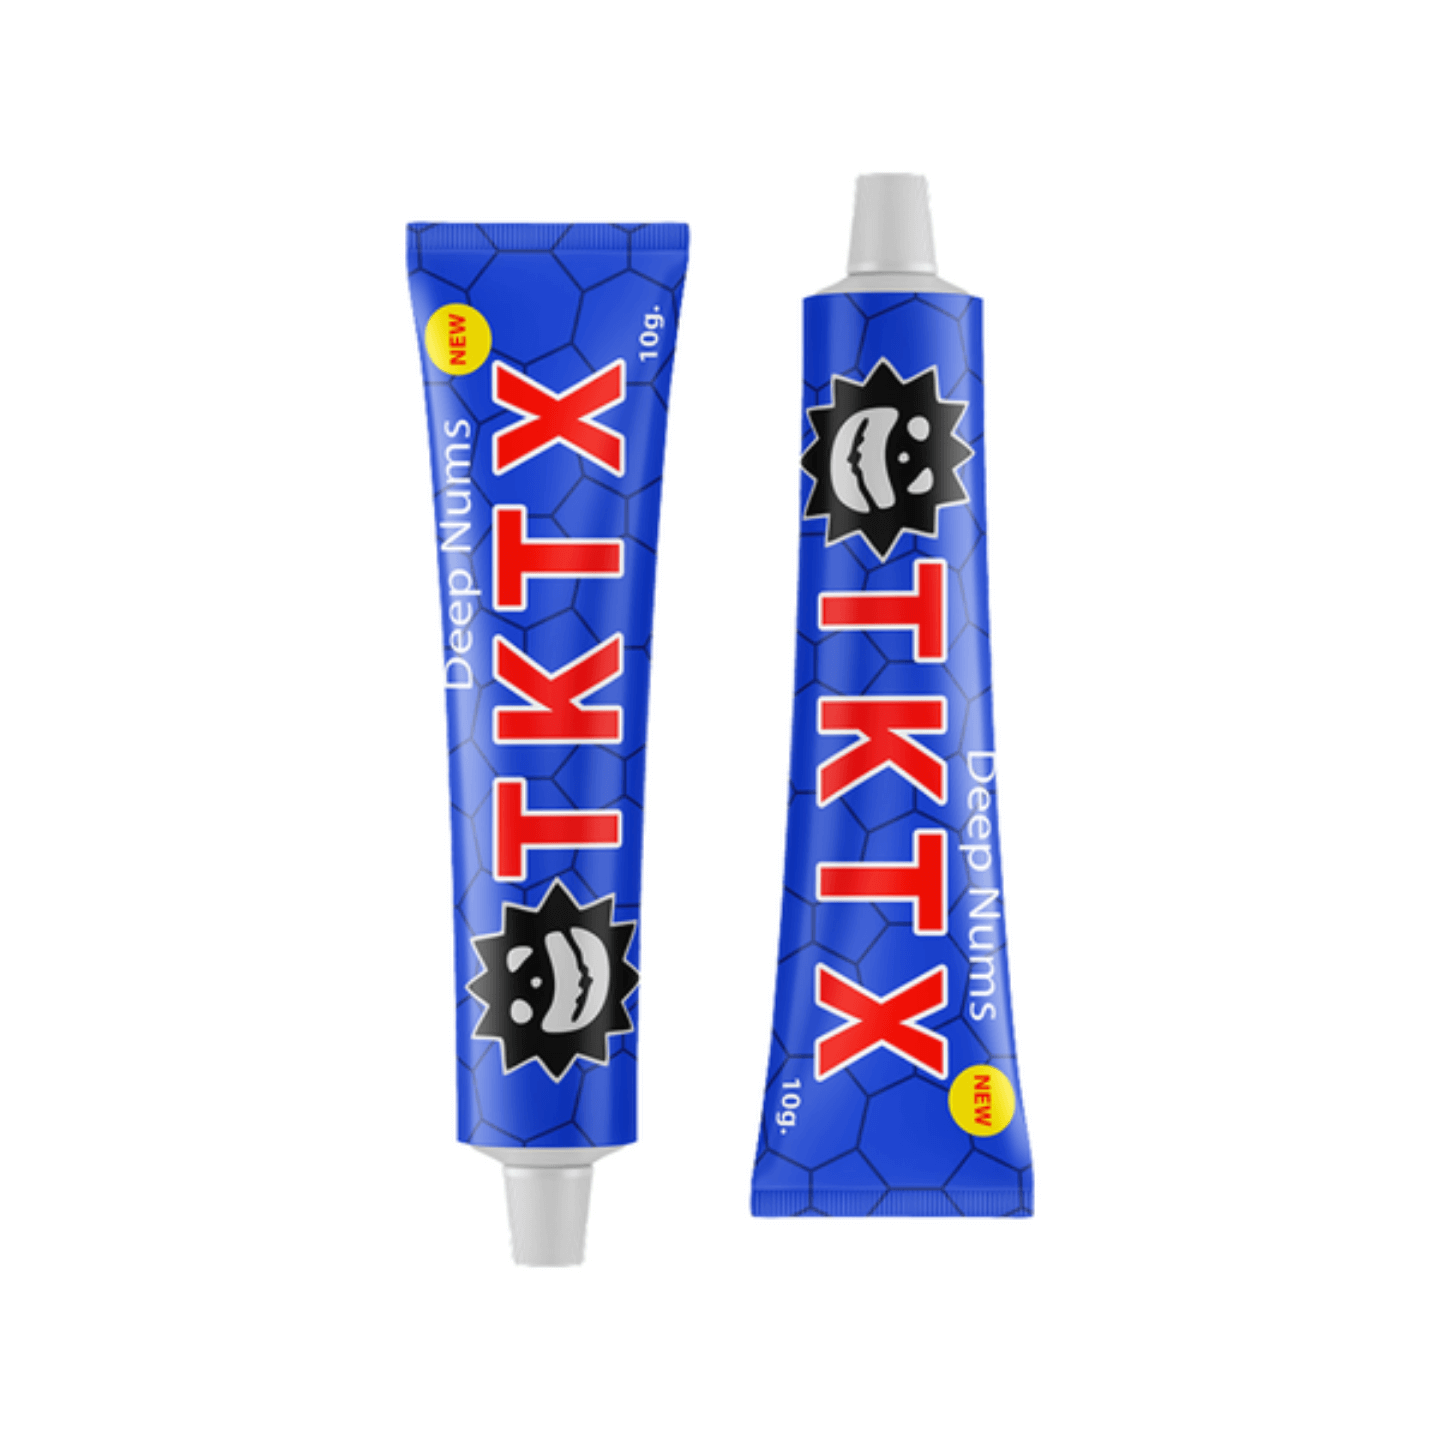 TKTX verdovingszalf crème Blauw 75% Sale